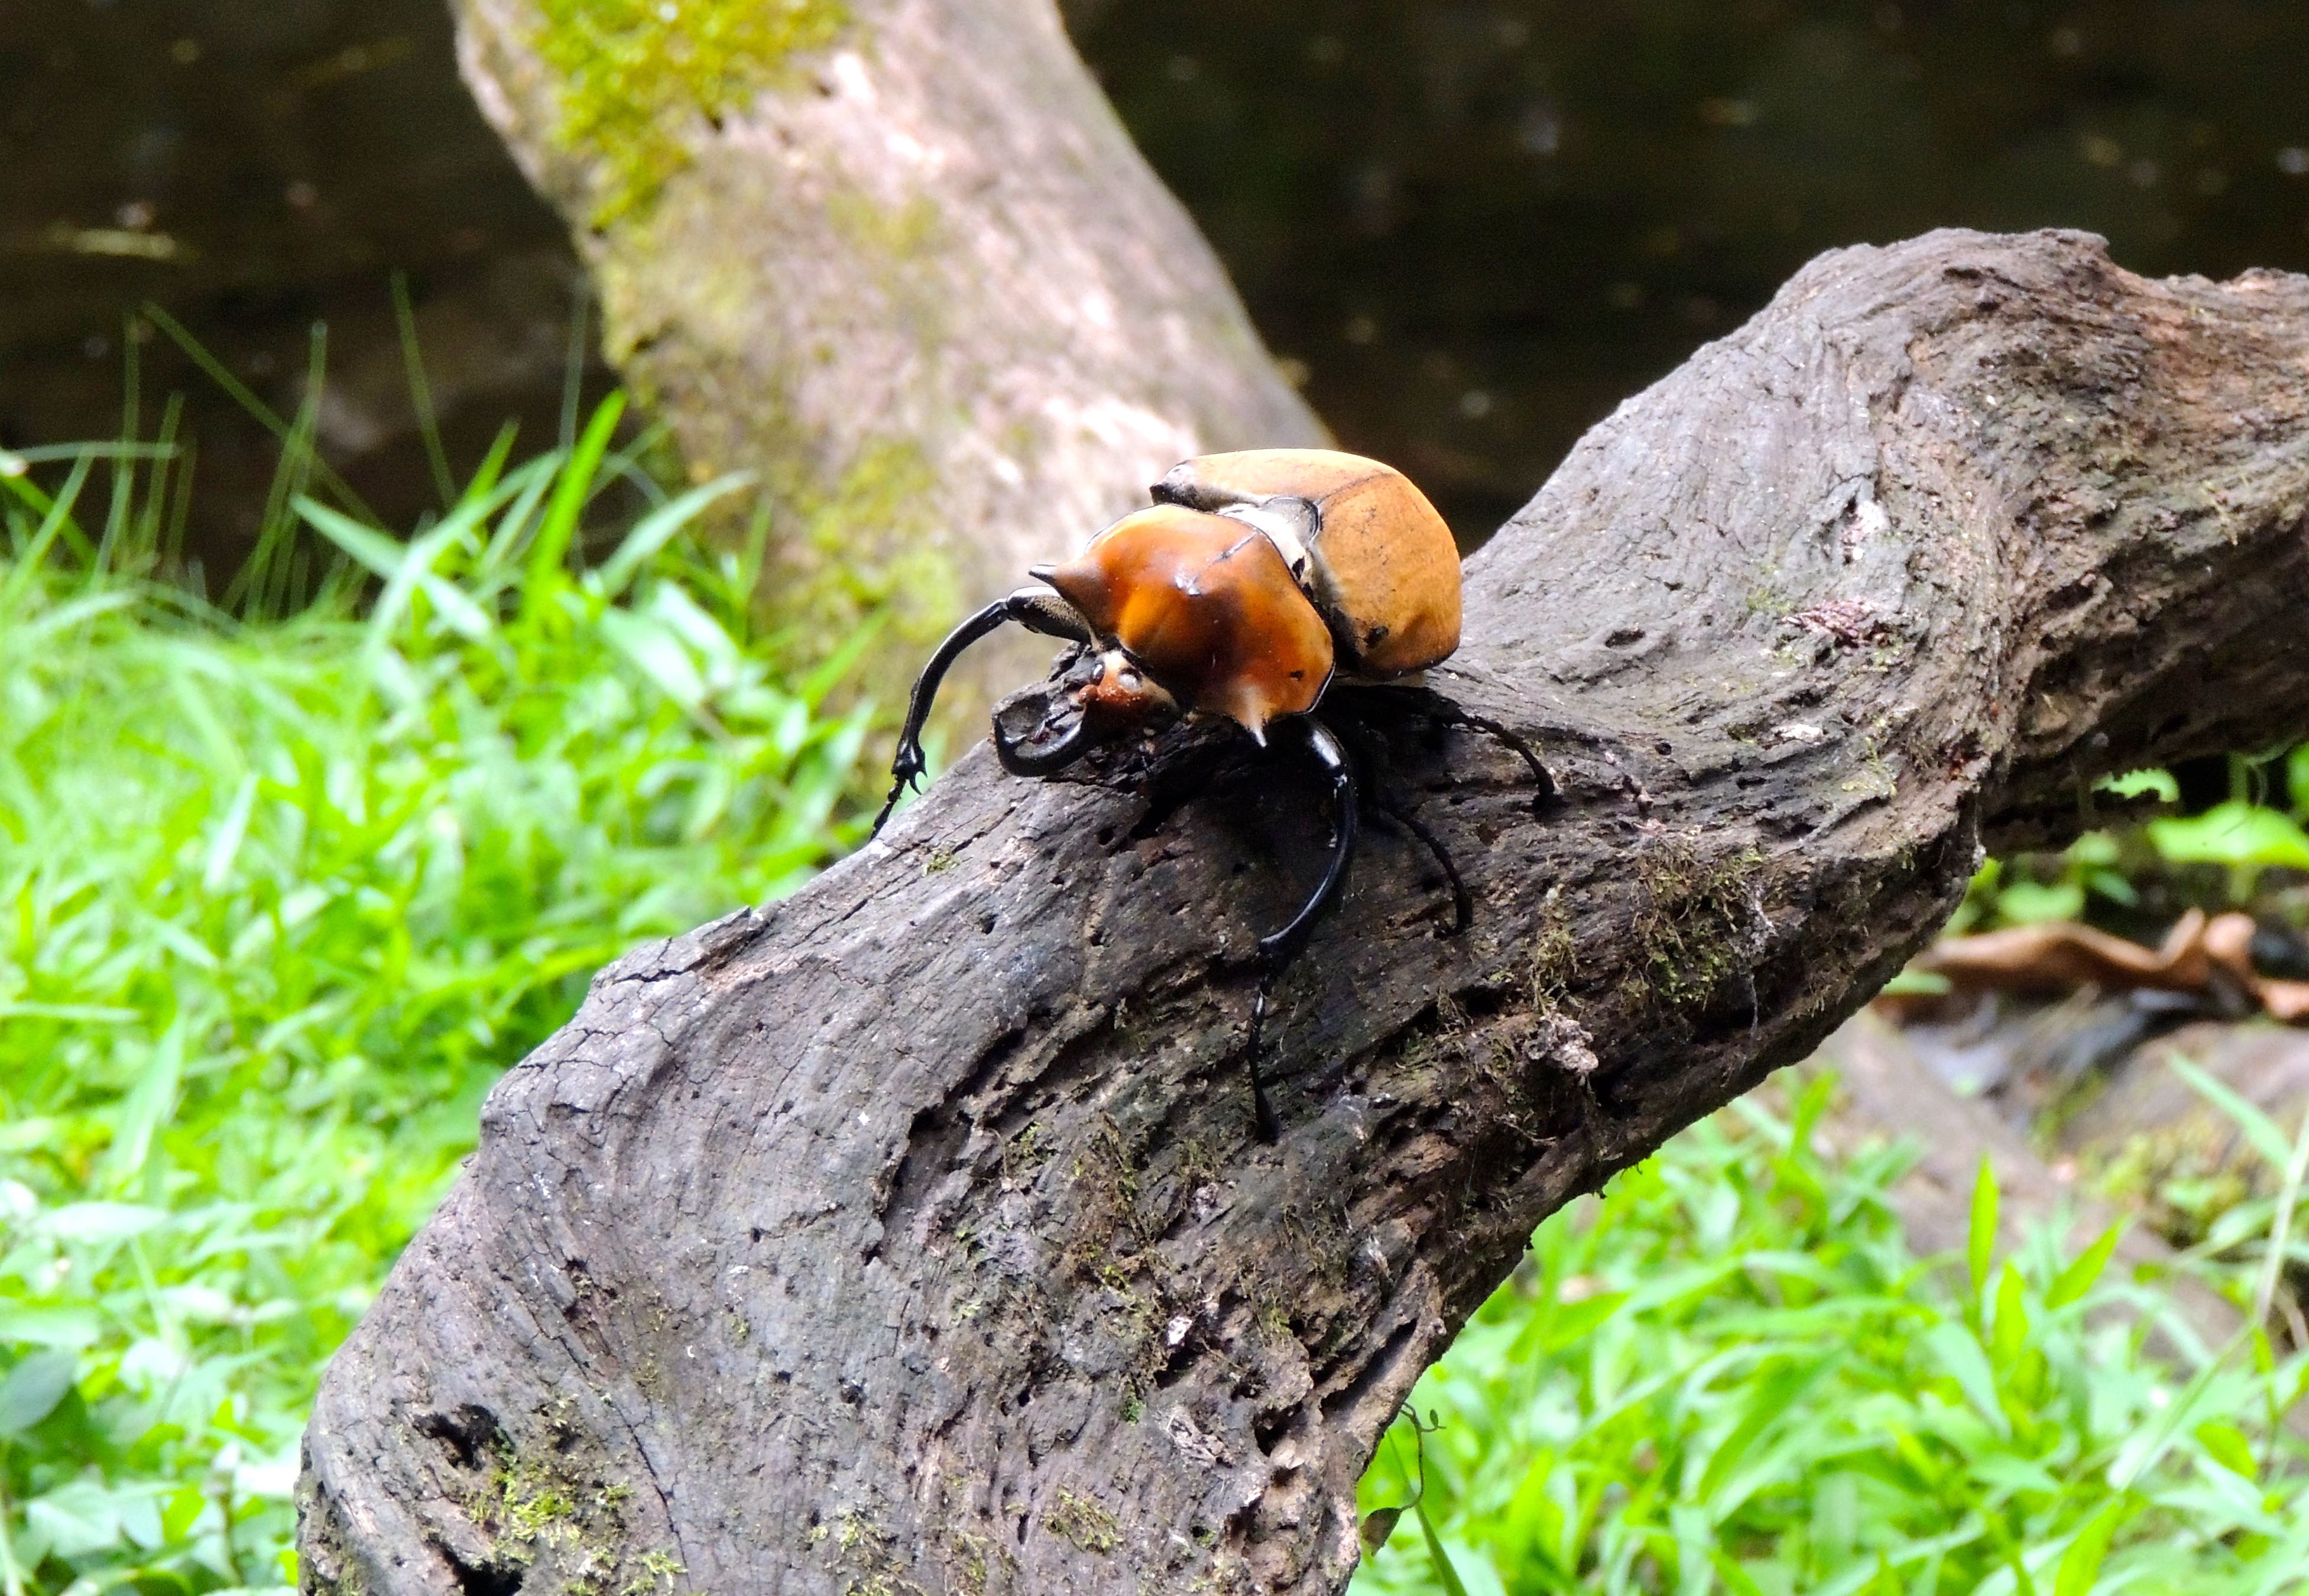 Elephant Beetle